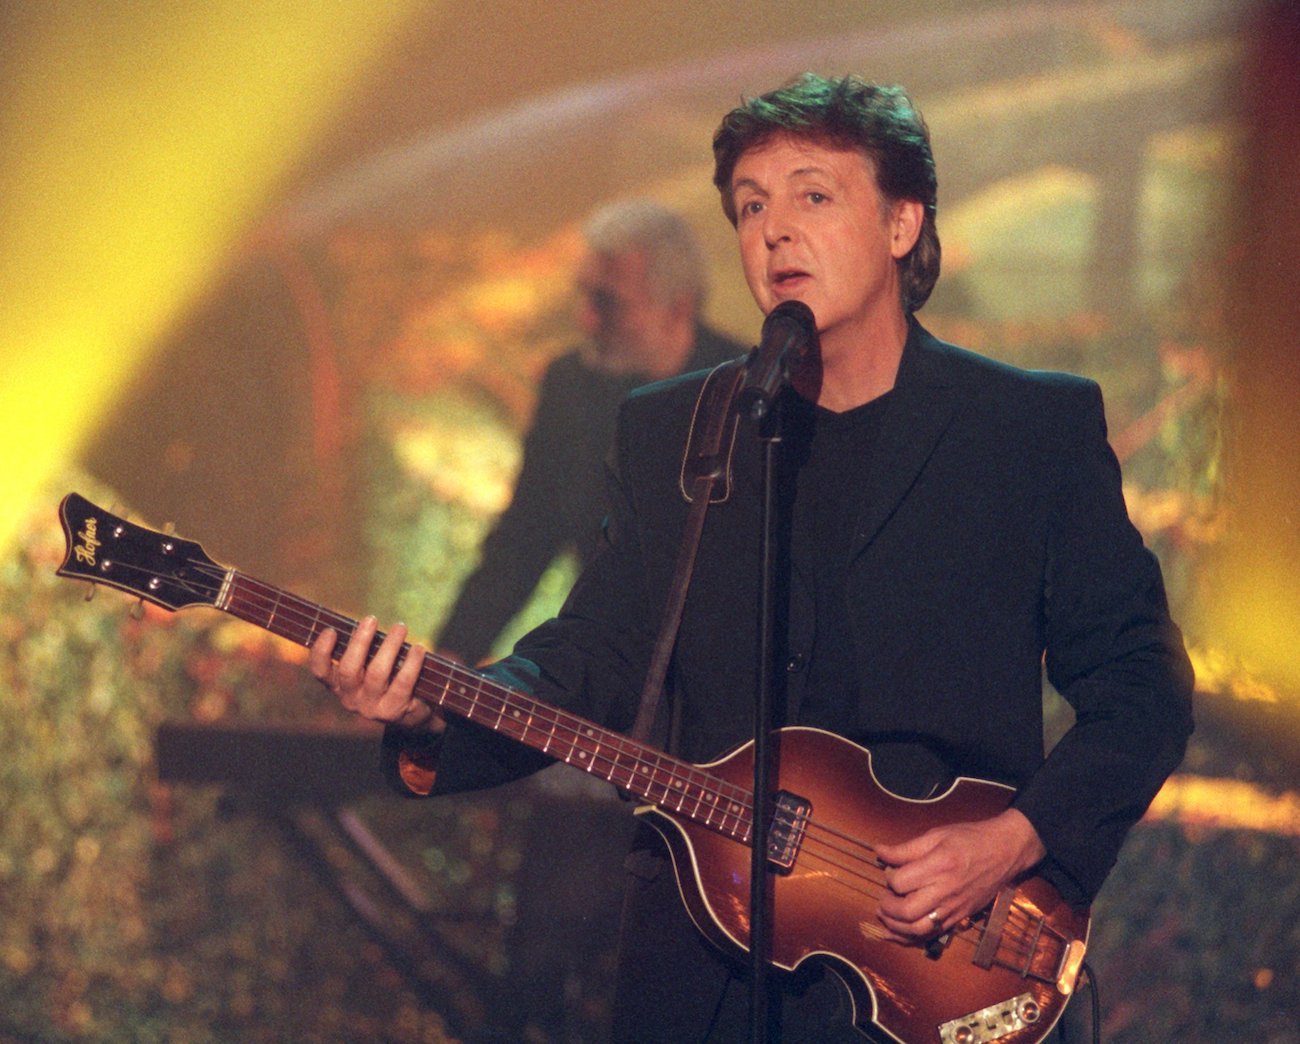 Paul McCartney performing in black in 1999.